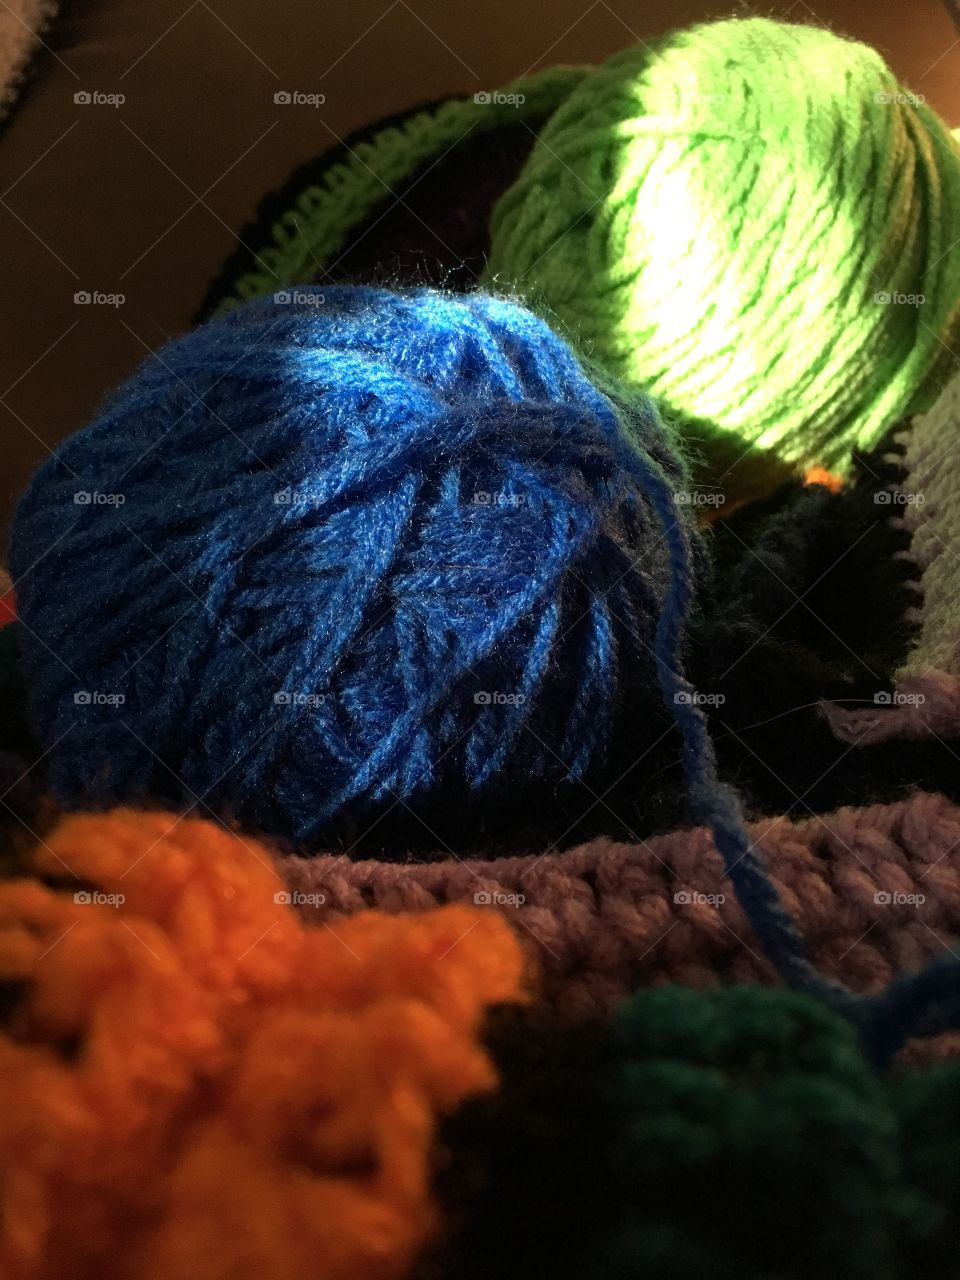 Yarn crafting